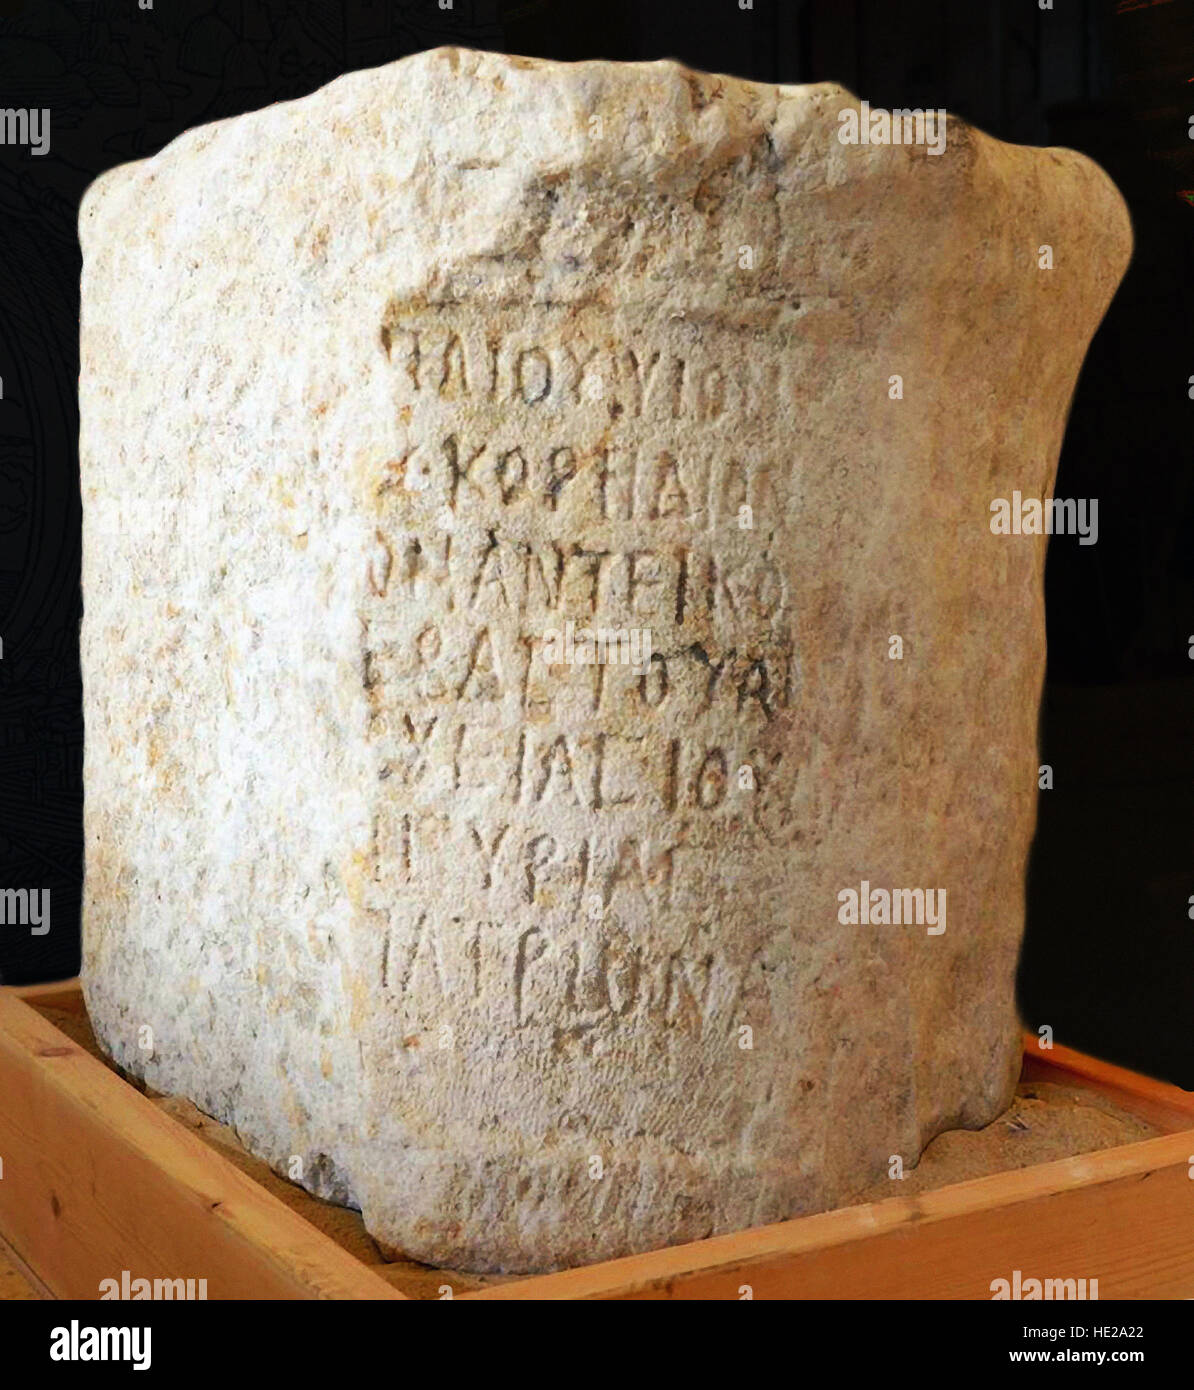 6032. Inscripción griega descubierta bajo el mar cerca de Dor (Israel). El texto menciona "Arcus Paccius gobernador de la provincia de Judea, patrono de la... Foto de stock